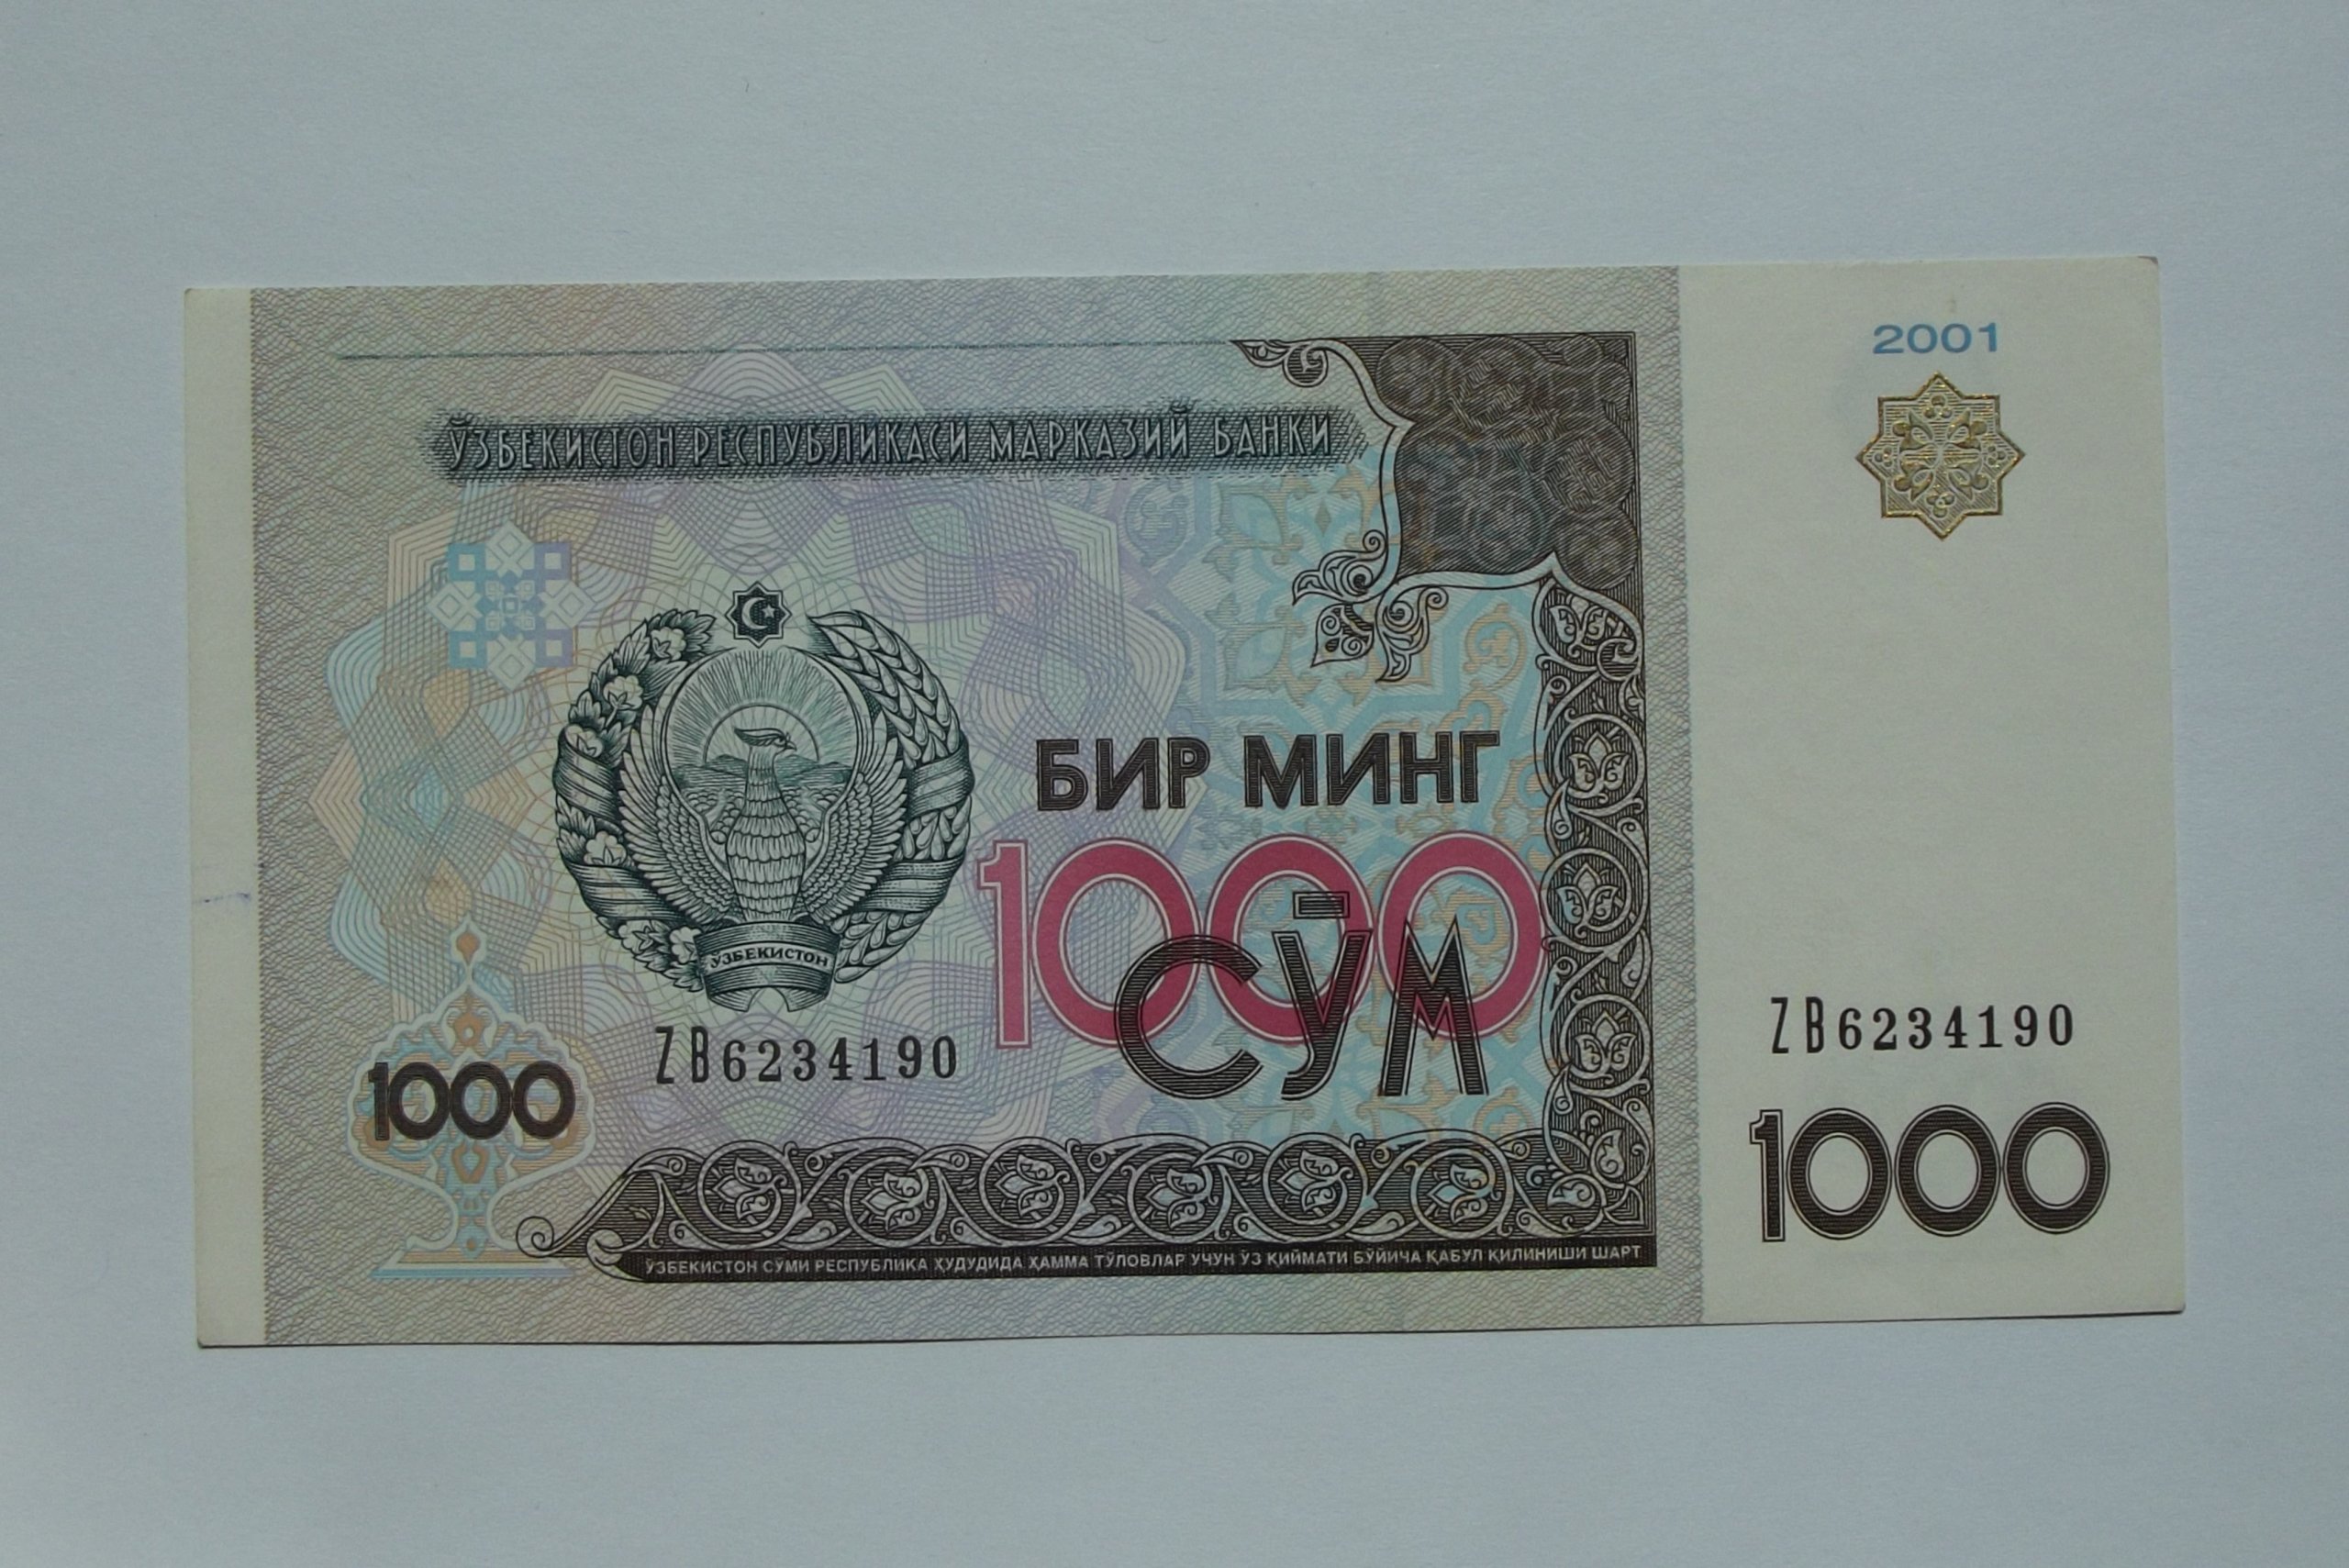 60 тысяч в сумах. 1000 Сум. "1000 Сум 2001". Узбекистан 1000 сум 2001 года коллекционный. Деньги Узбекистана 1000 сум.